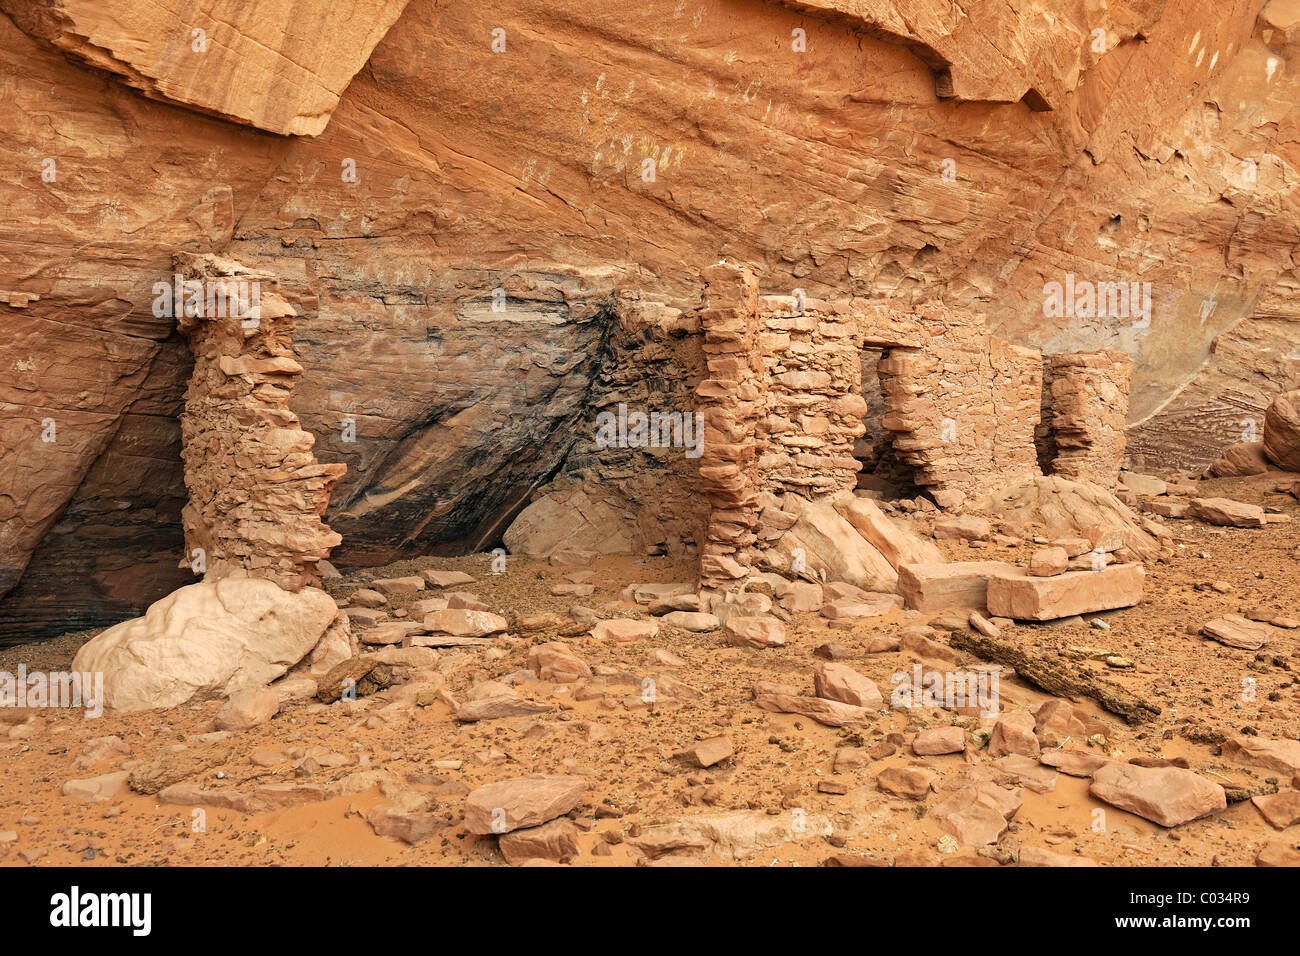 Maison de beaucoup de mains, environ 1500 ans ruines des indiens des États-Unis, Mystery Valley, Arizona, USA Banque D'Images